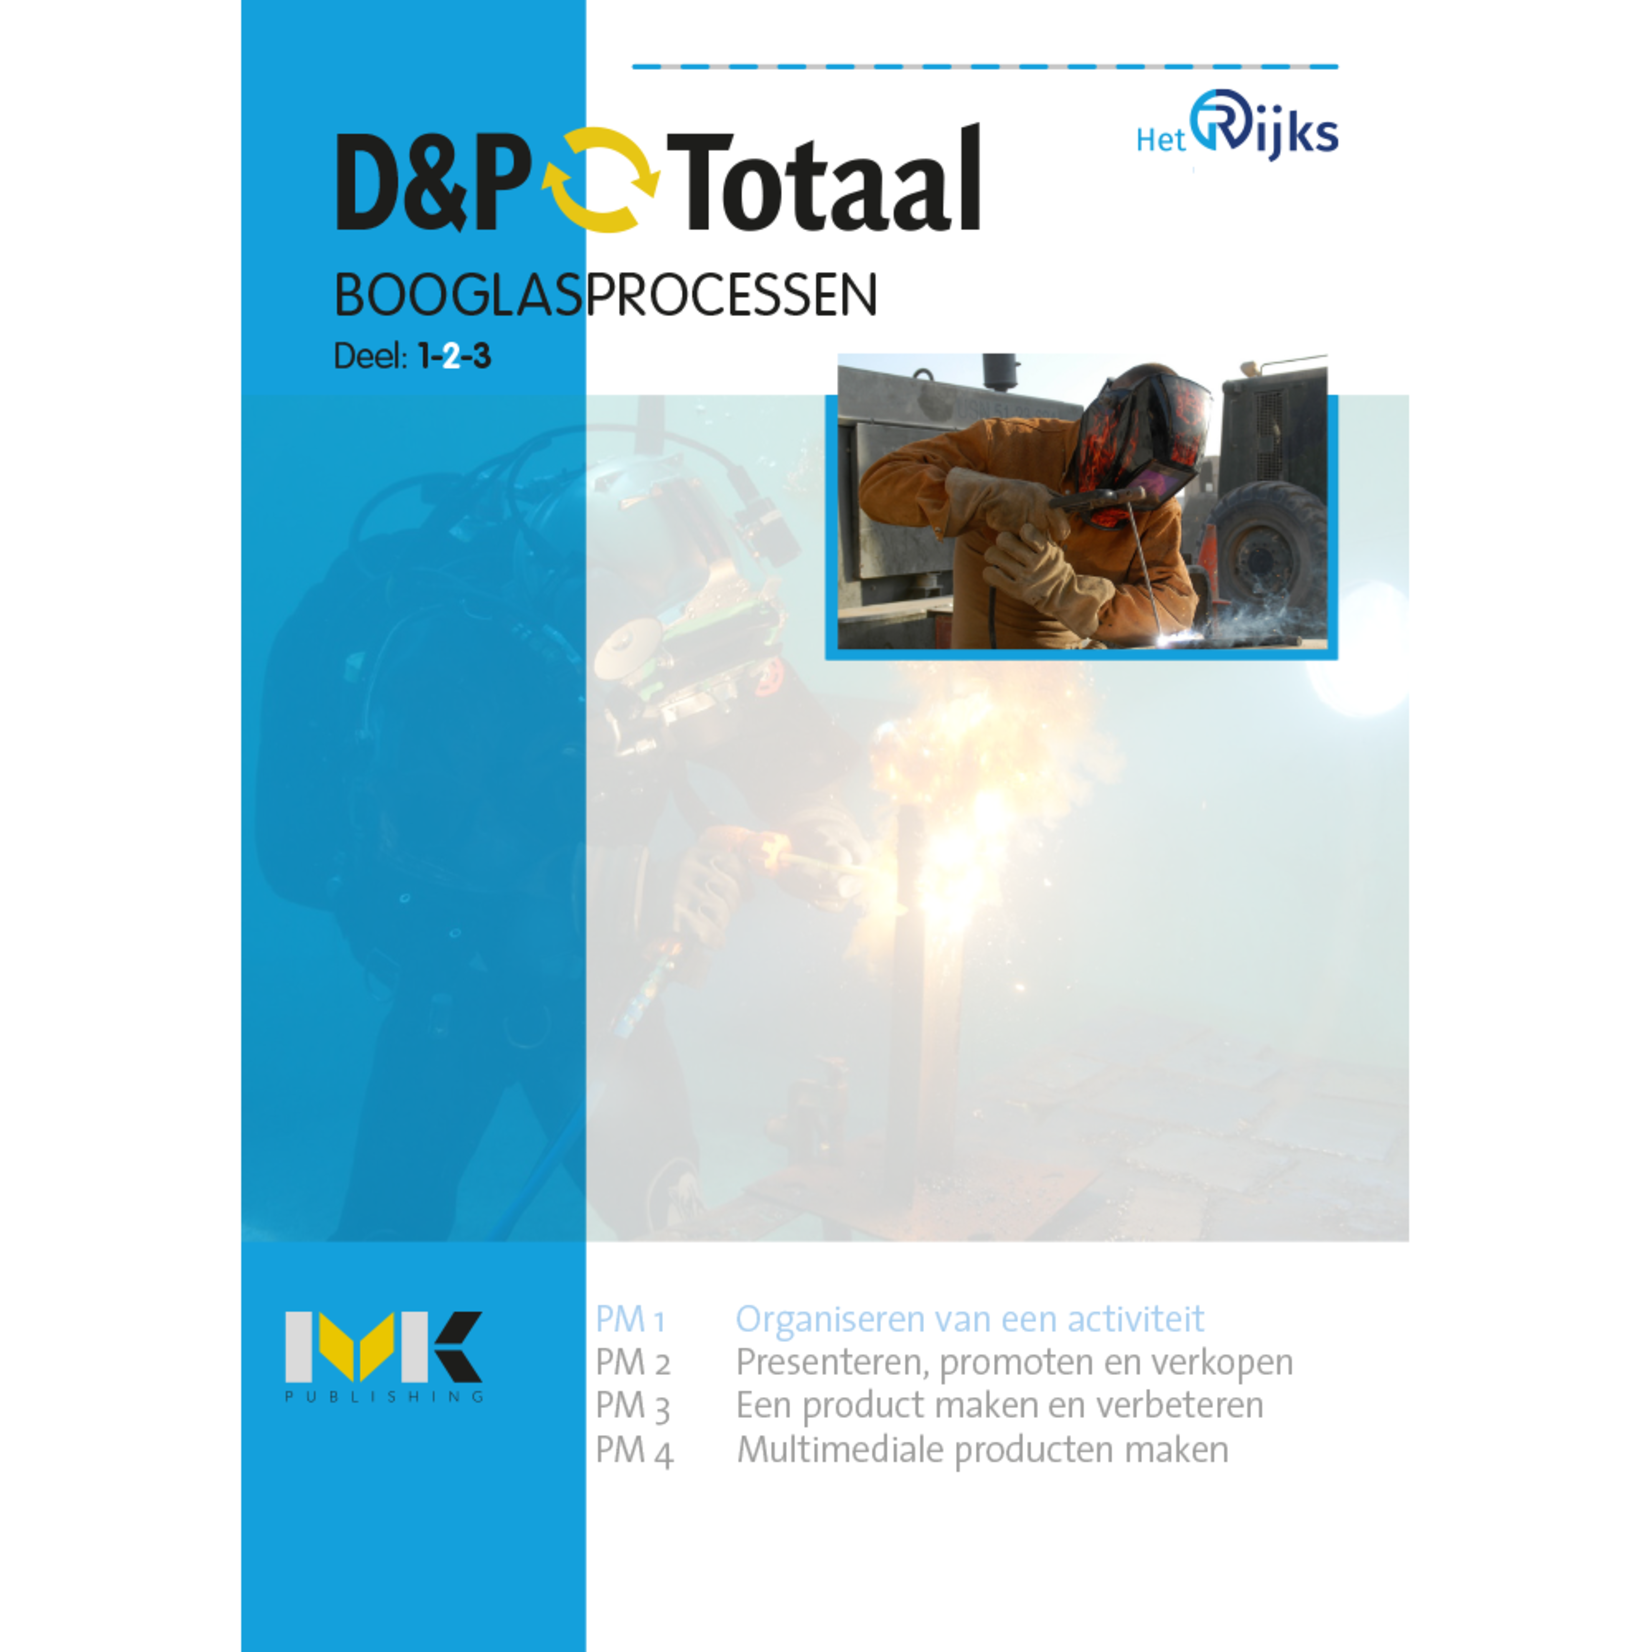 D&P-Totaal - PIE Booglasprocessen (PM1/1326)